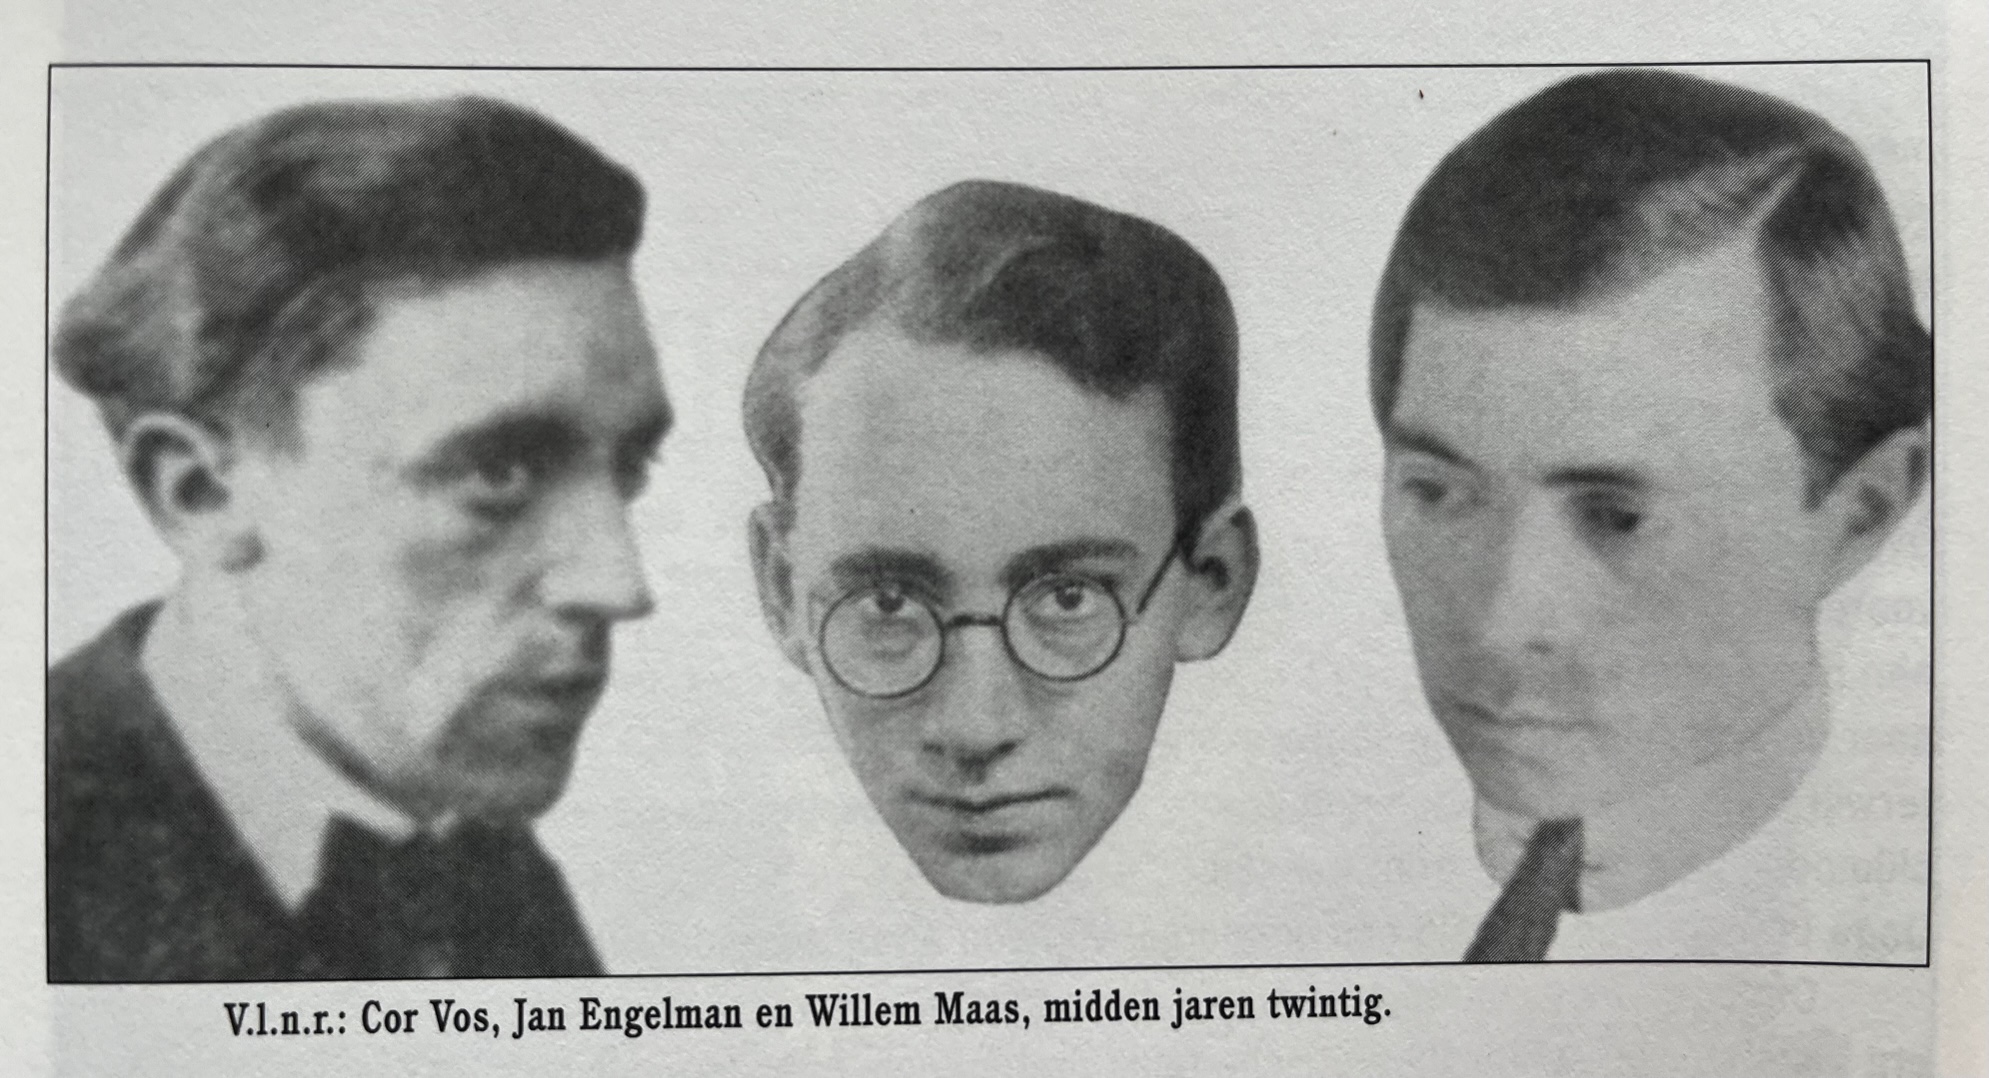 Cor Vos Jan Engelman en Willem Maas die Kurt Schwitters op het station ontvingen met een modernistisch boeket van bloemen in conservenblikken